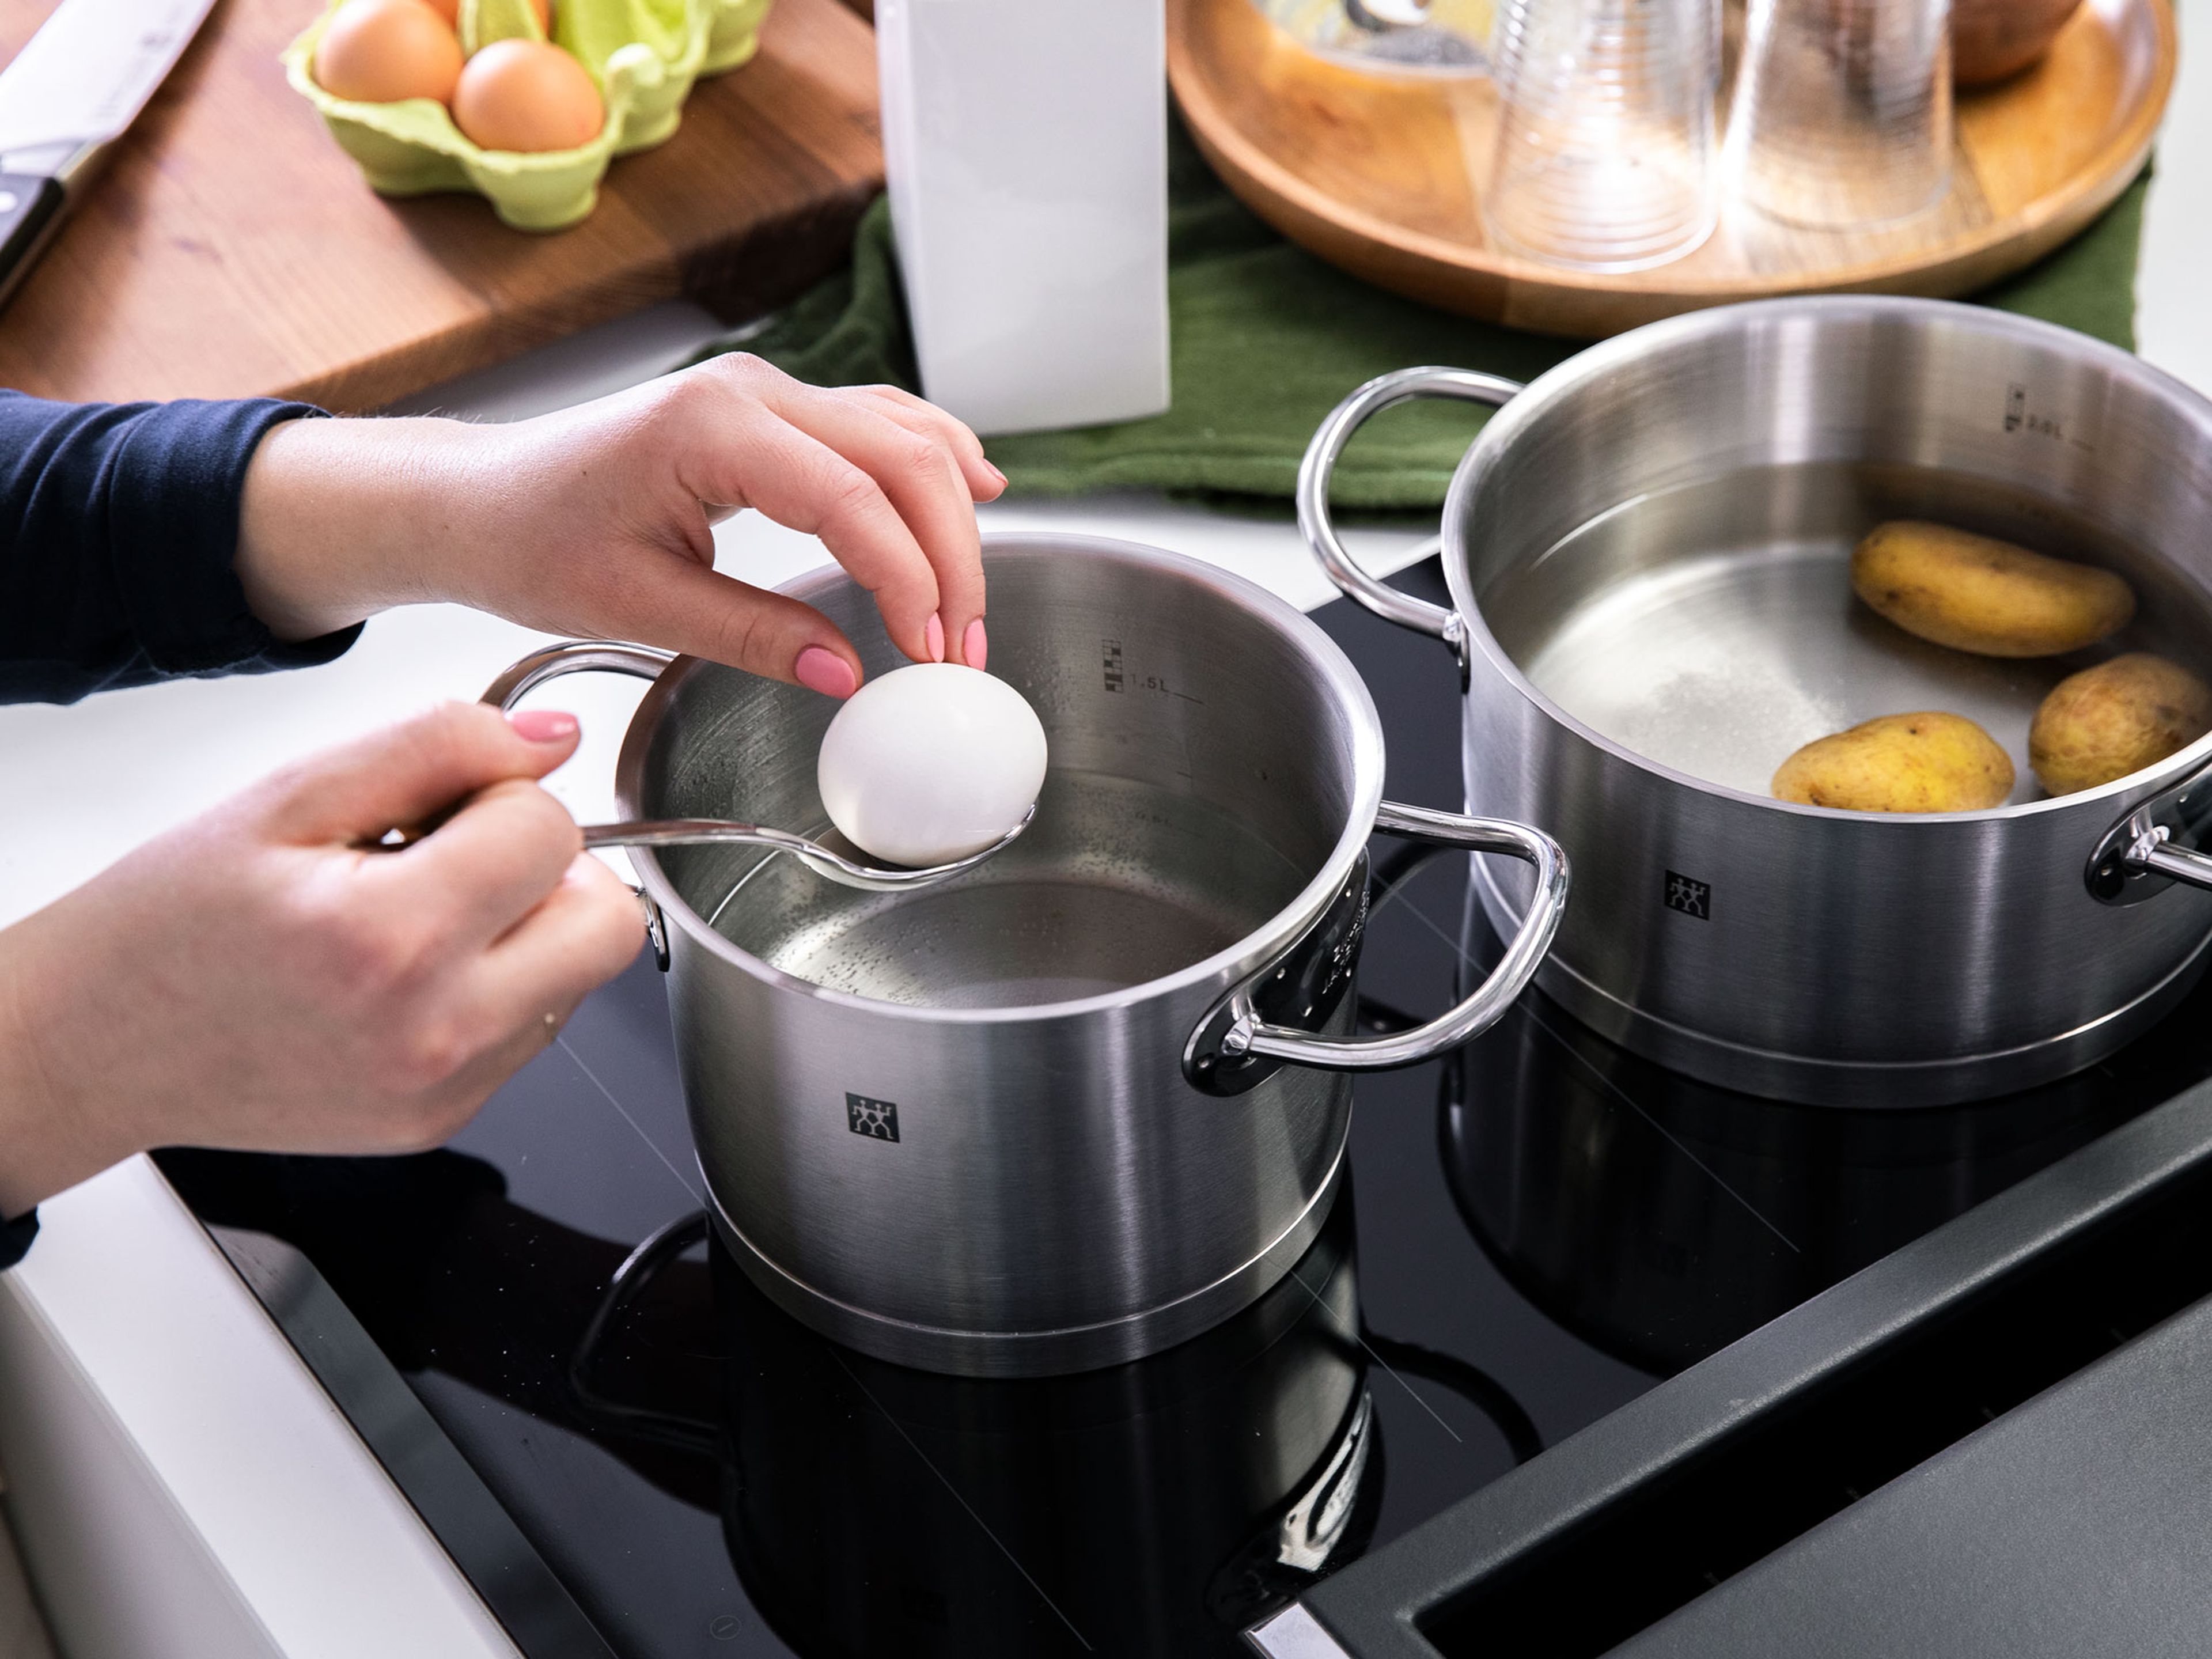 Kartoffeln in einen Topf mit kaltem Wasser geben, salzen und kochen, bis sie weich sind. In der Zwischenzeit Eier ca. 6 - 7 Min. kochen. Kartoffeln und Eier abgießen und ankühlen lassen. Anschließend beides schälen und in mundgerechte Stücke schneiden.